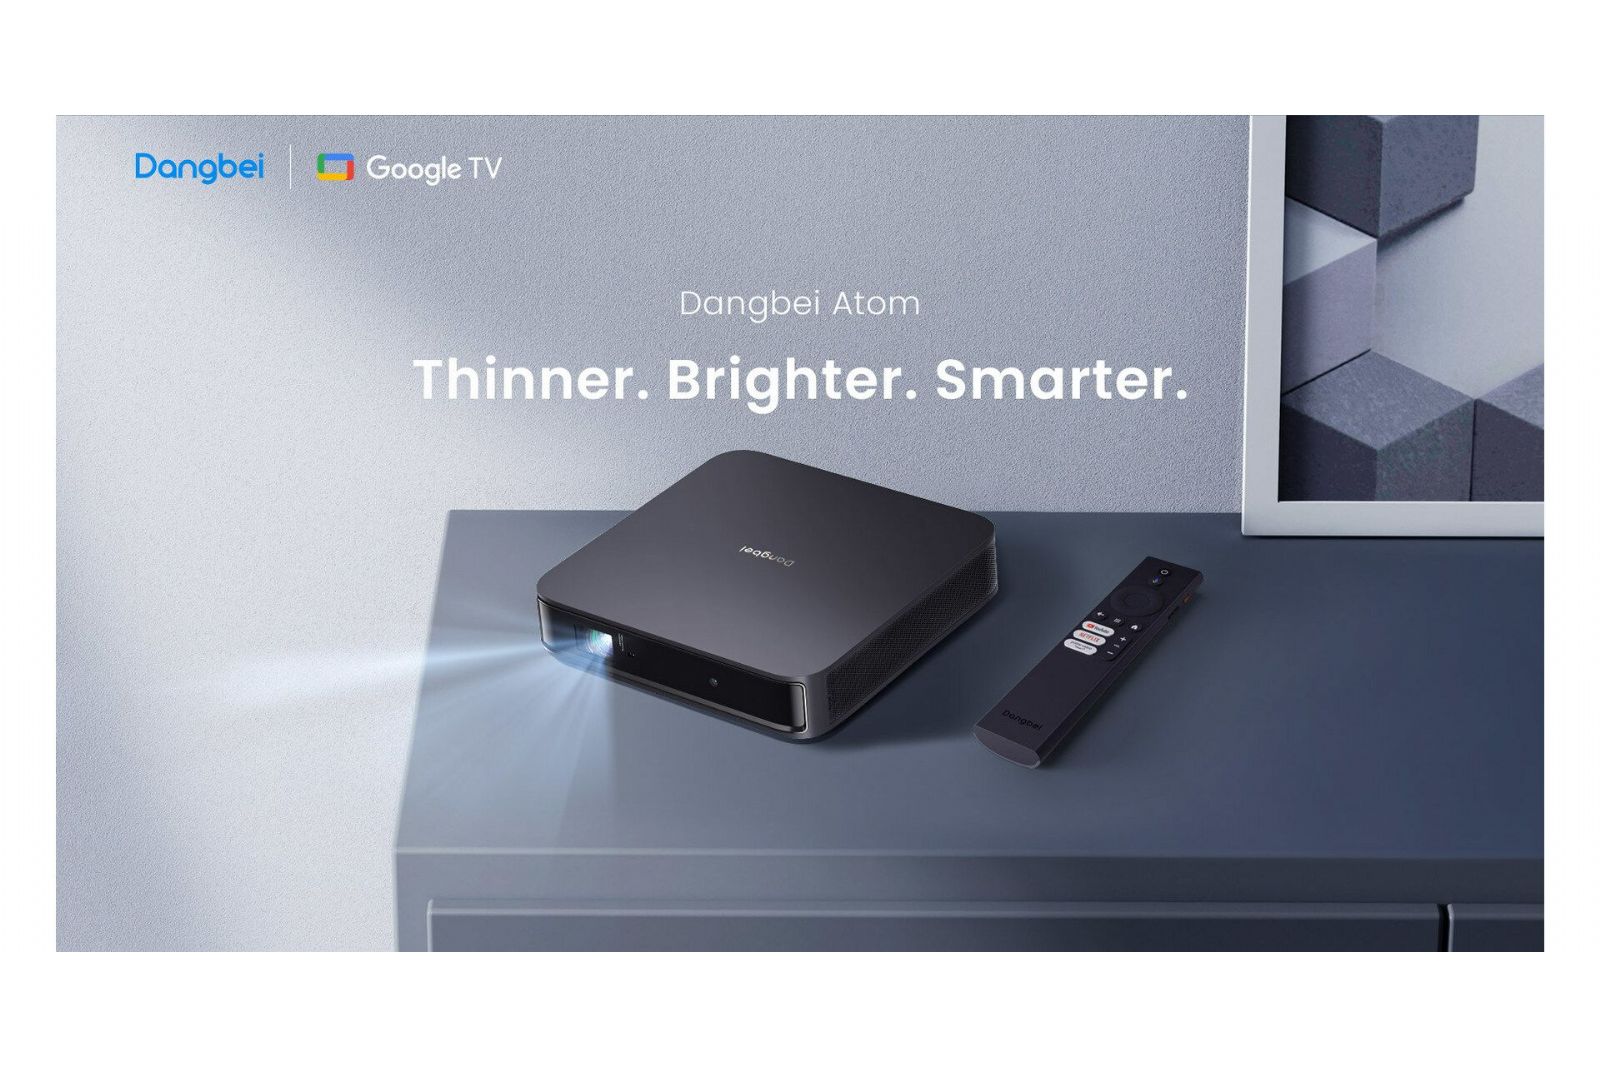 Projektorer Dangbei Atom laserprojektor med Google TV